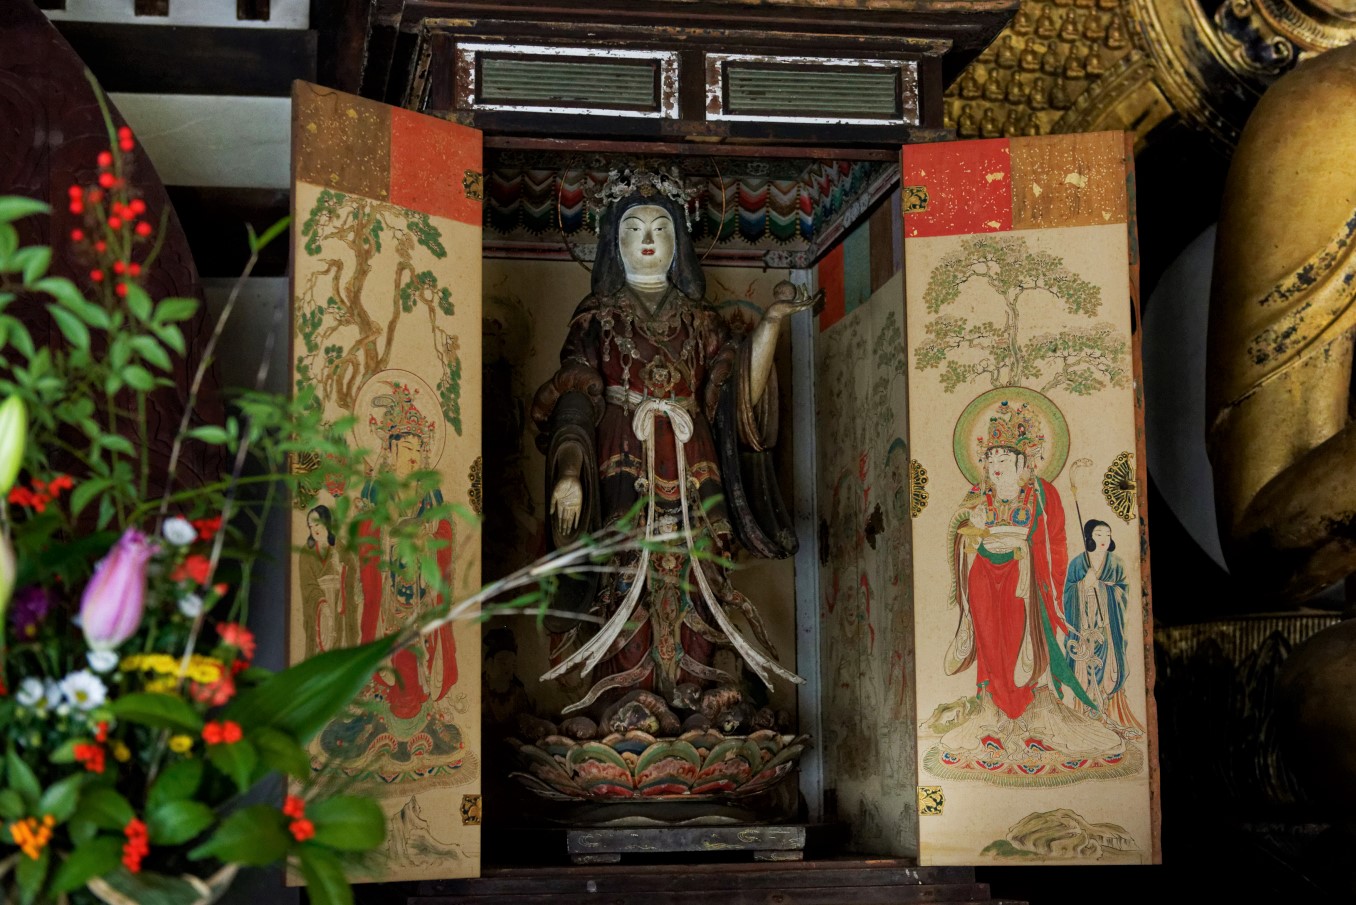 我們前去采訪時，古寺特別開放了供奉密佛吉祥天女立像的佛龕。這尊天女像據傳誕生於鐮倉時代，已被列為國家重要文化遺產。